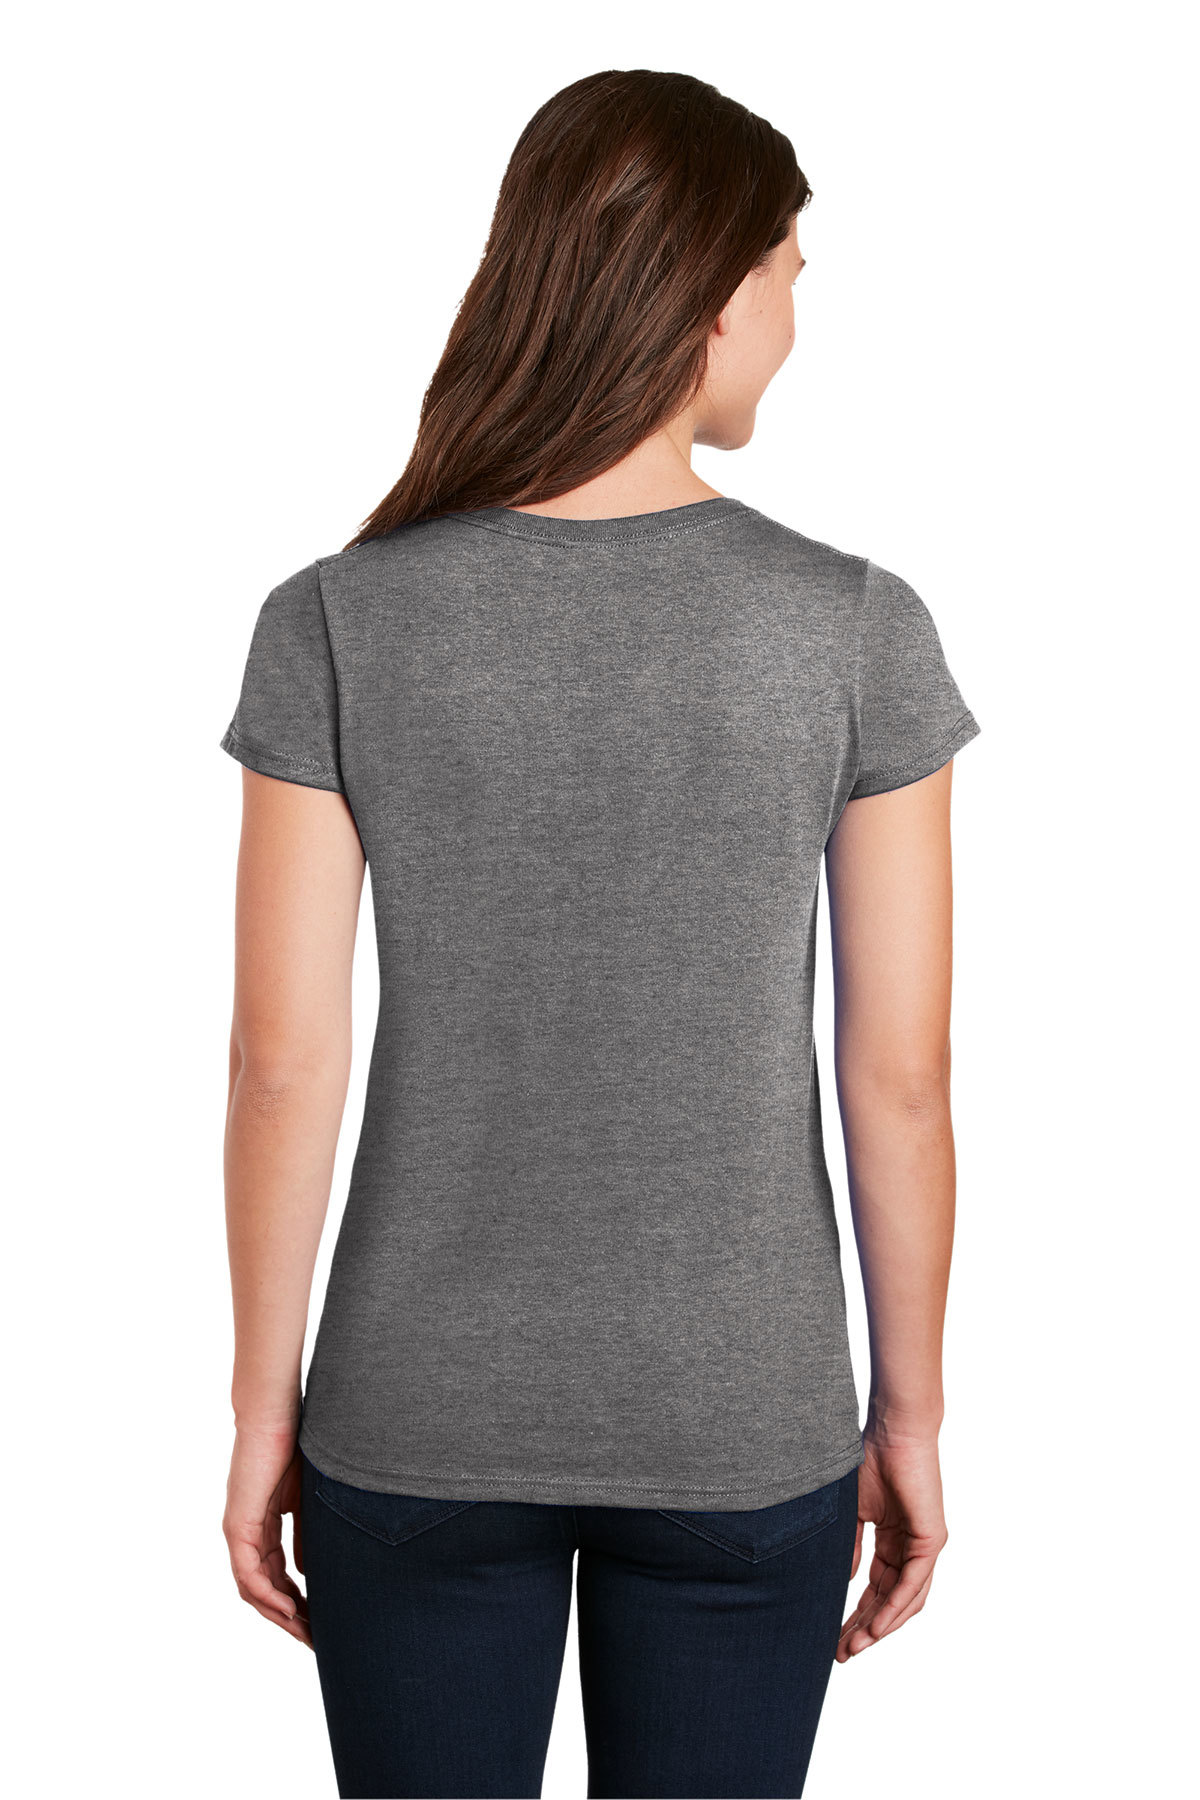 Gildan Ladies Heavy Cotton 100% Cotton V-Neck T-Shirt | Product | SanMar